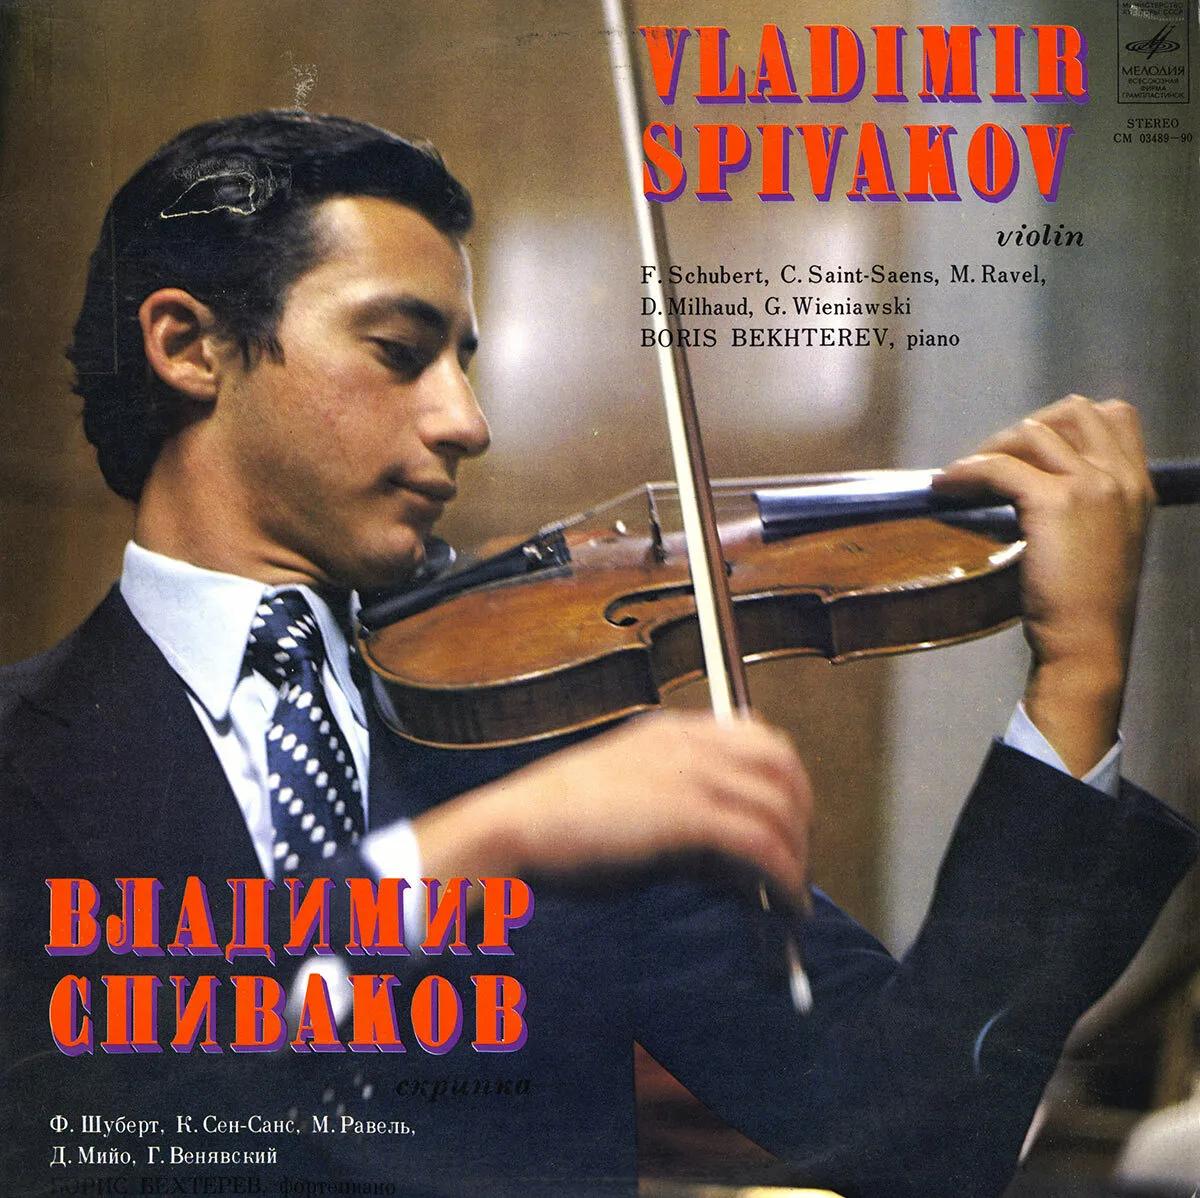 spivakov violin - Where is Vladimir Spivakov now